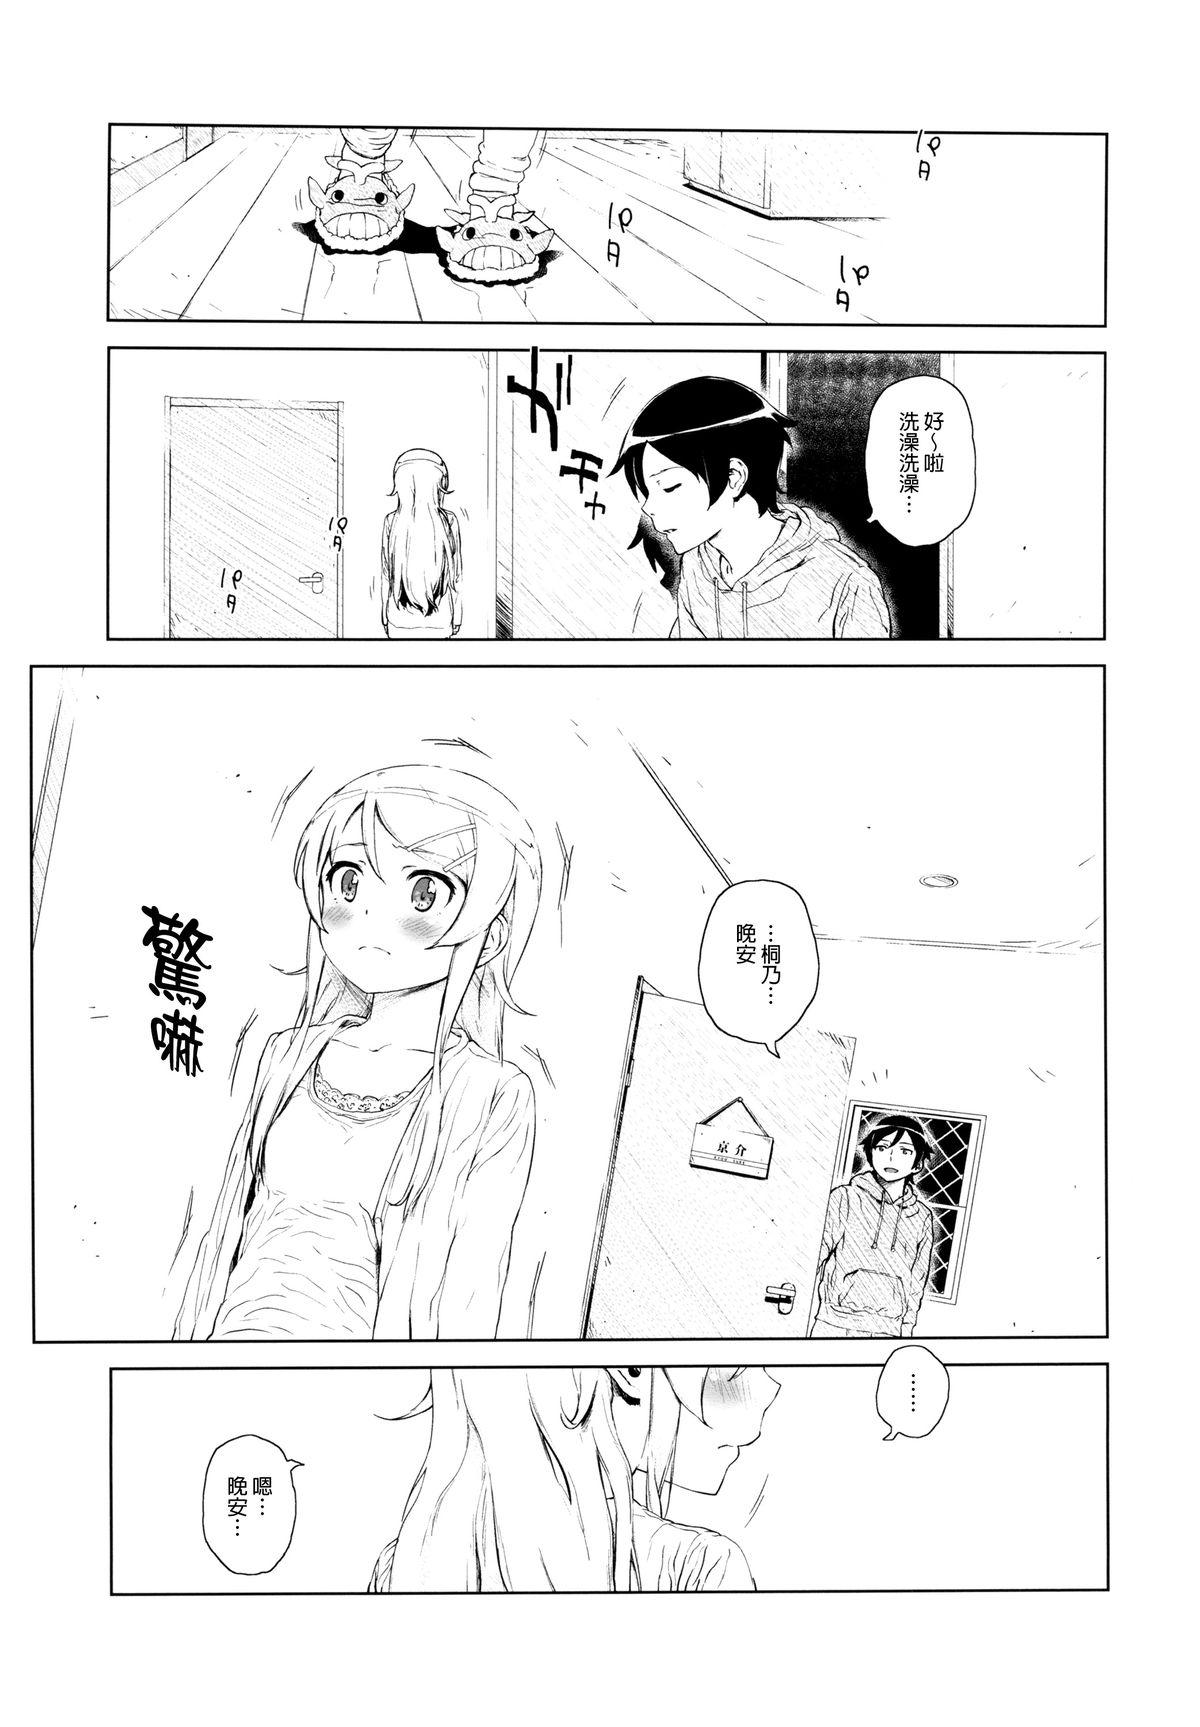 Secret Hoshikuzu Namida 2 - Ore no imouto ga konna ni kawaii wake ga nai Webcamsex - Page 6